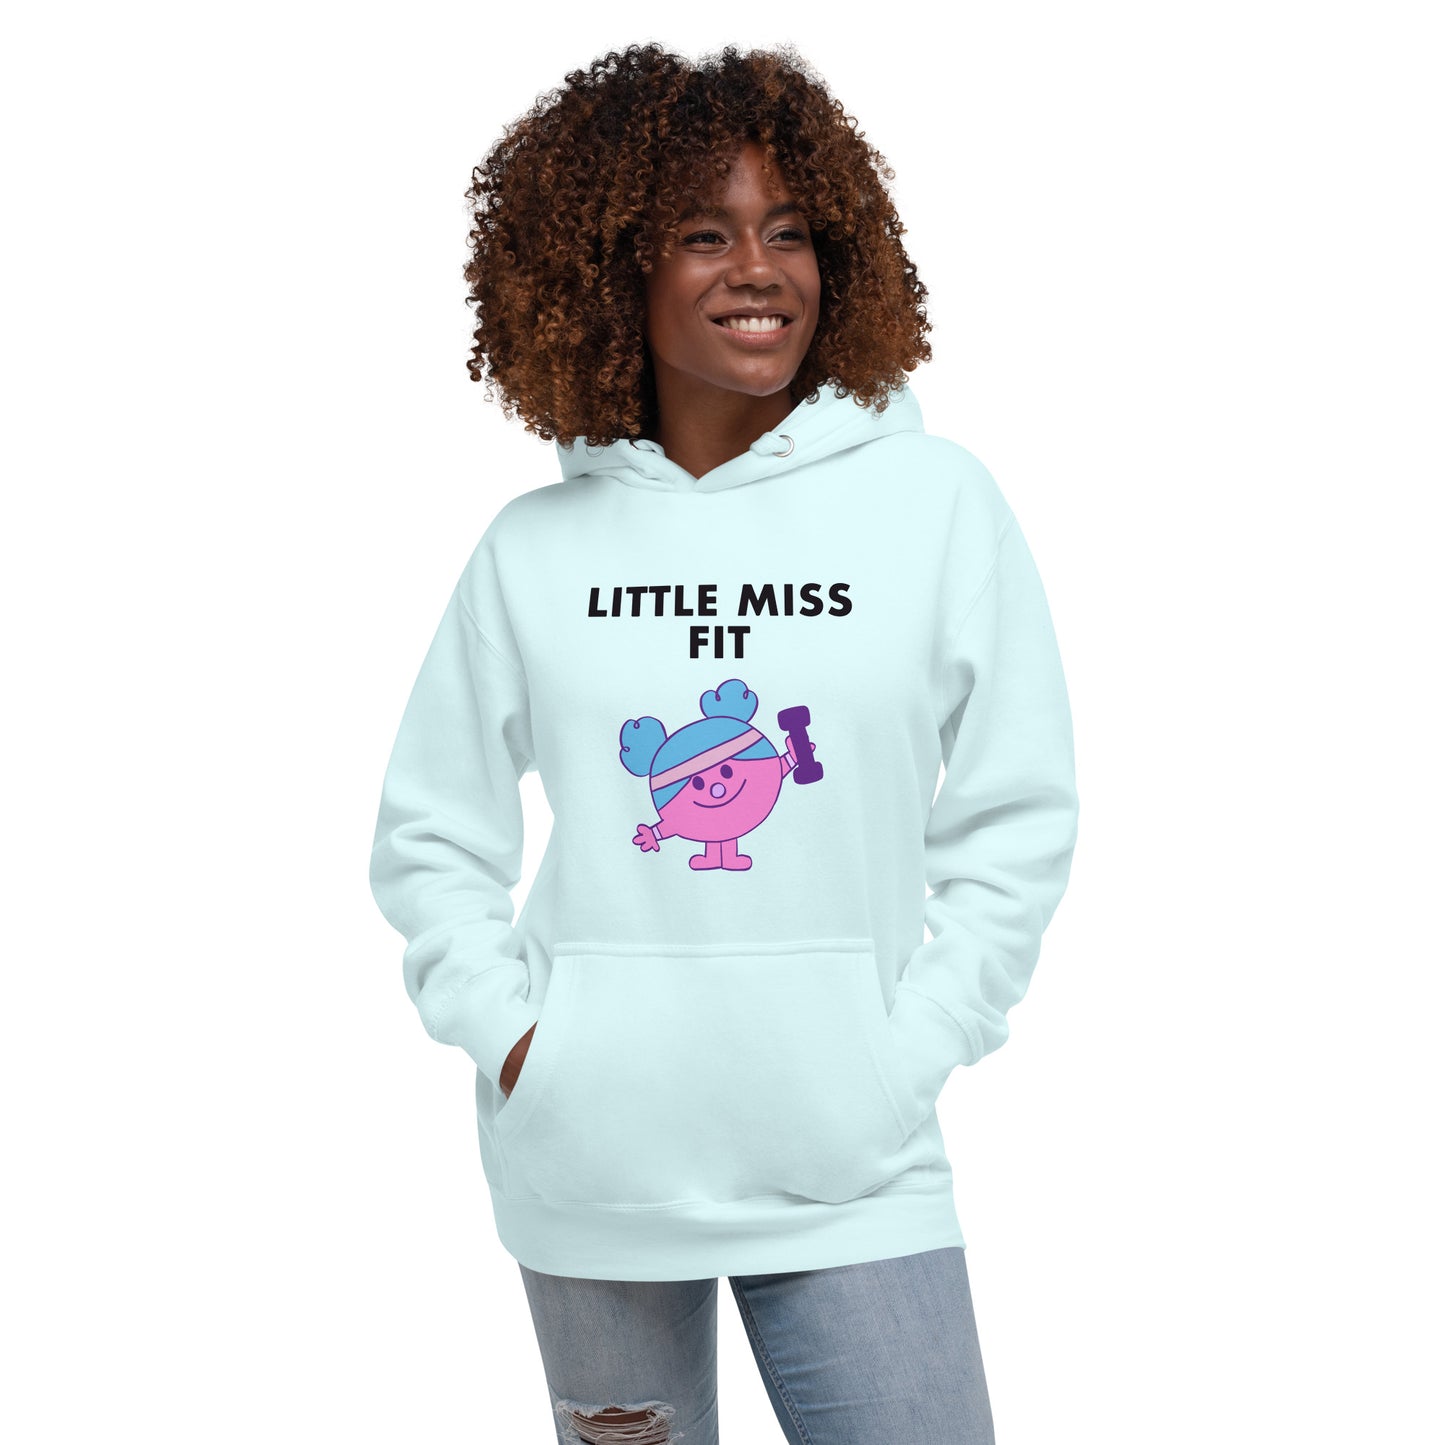 Little Miss Fit - Women's Hoodie